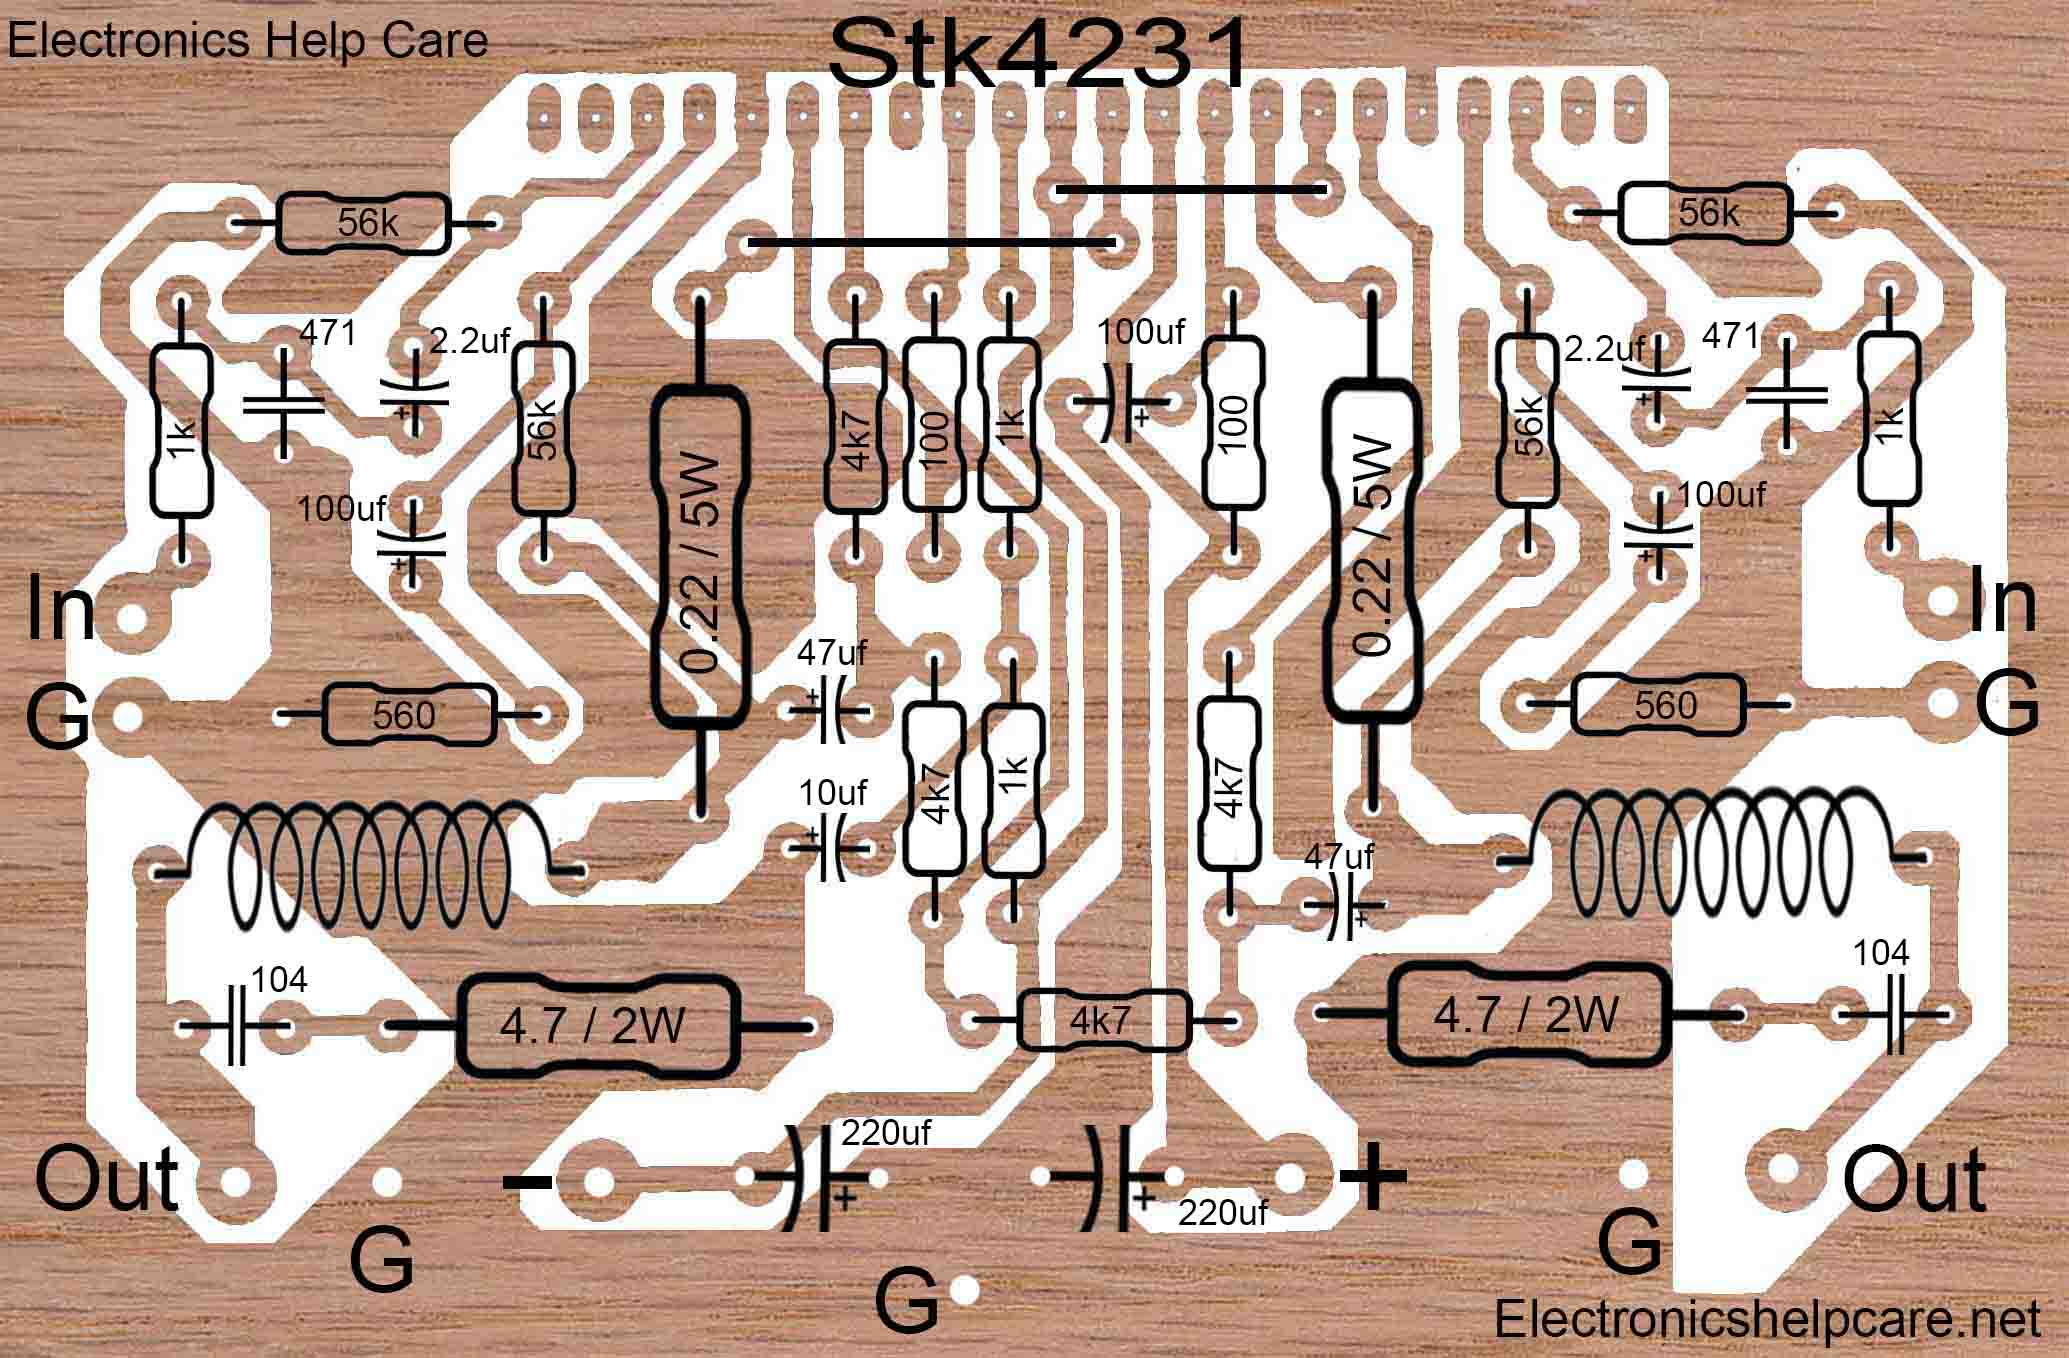 Stk4231 circuit Diagram.